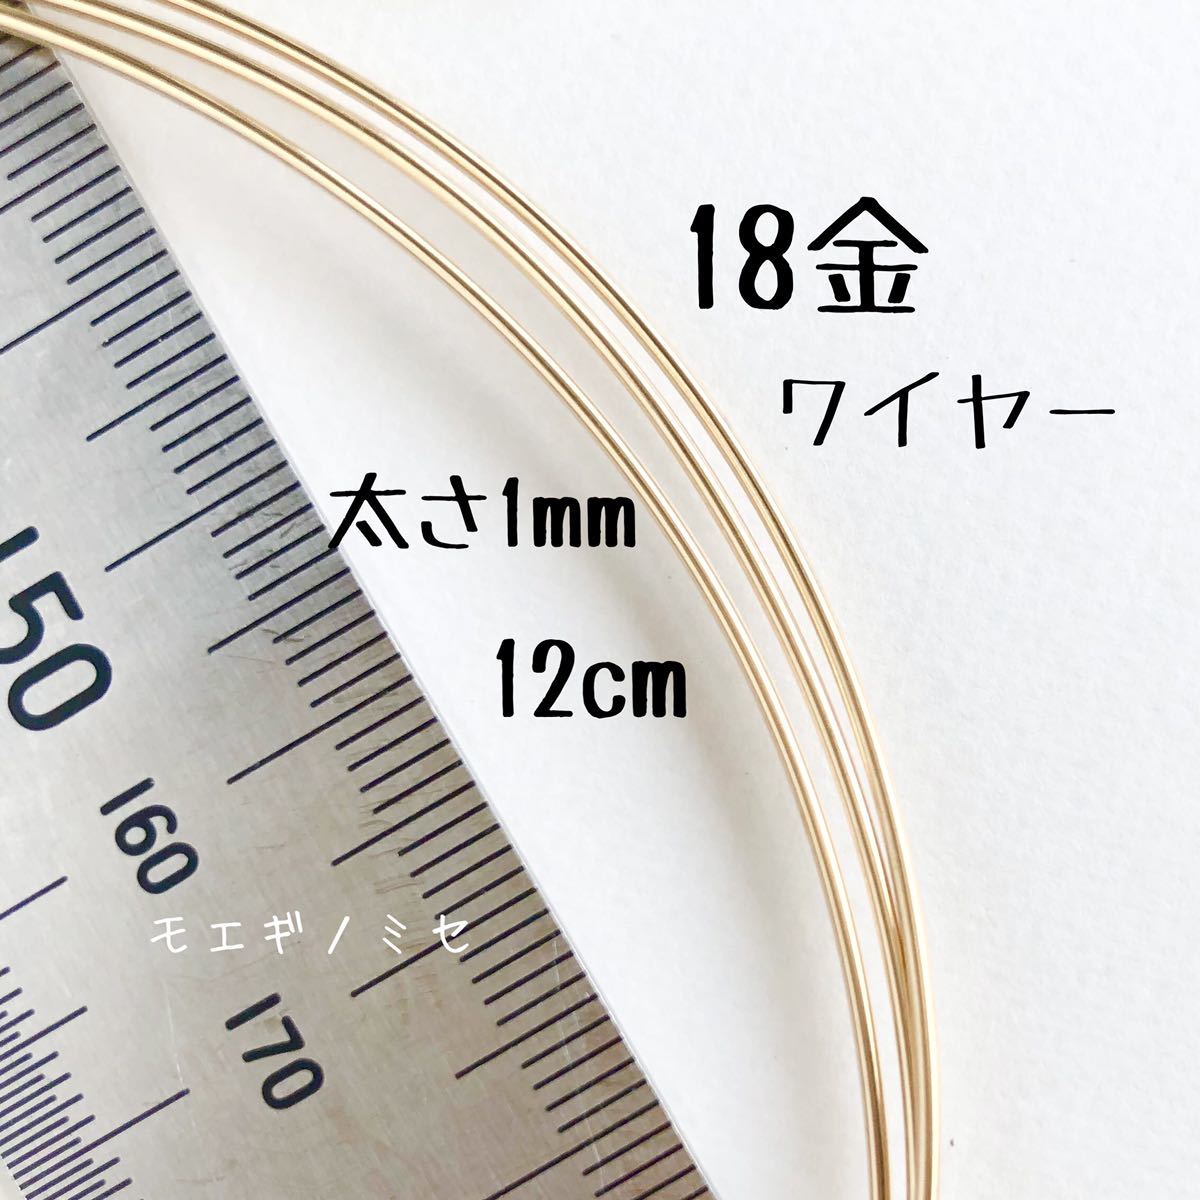 Продается проволока 18K, 1 мм, длина 12 см. Материал круглой проволоки K18. Сделано в Японии. Аксессуарный материал ручной работы. Продается круглая проволока, обрезная., Ручная работа, Ремесла, Бисероплетение, Металлические части